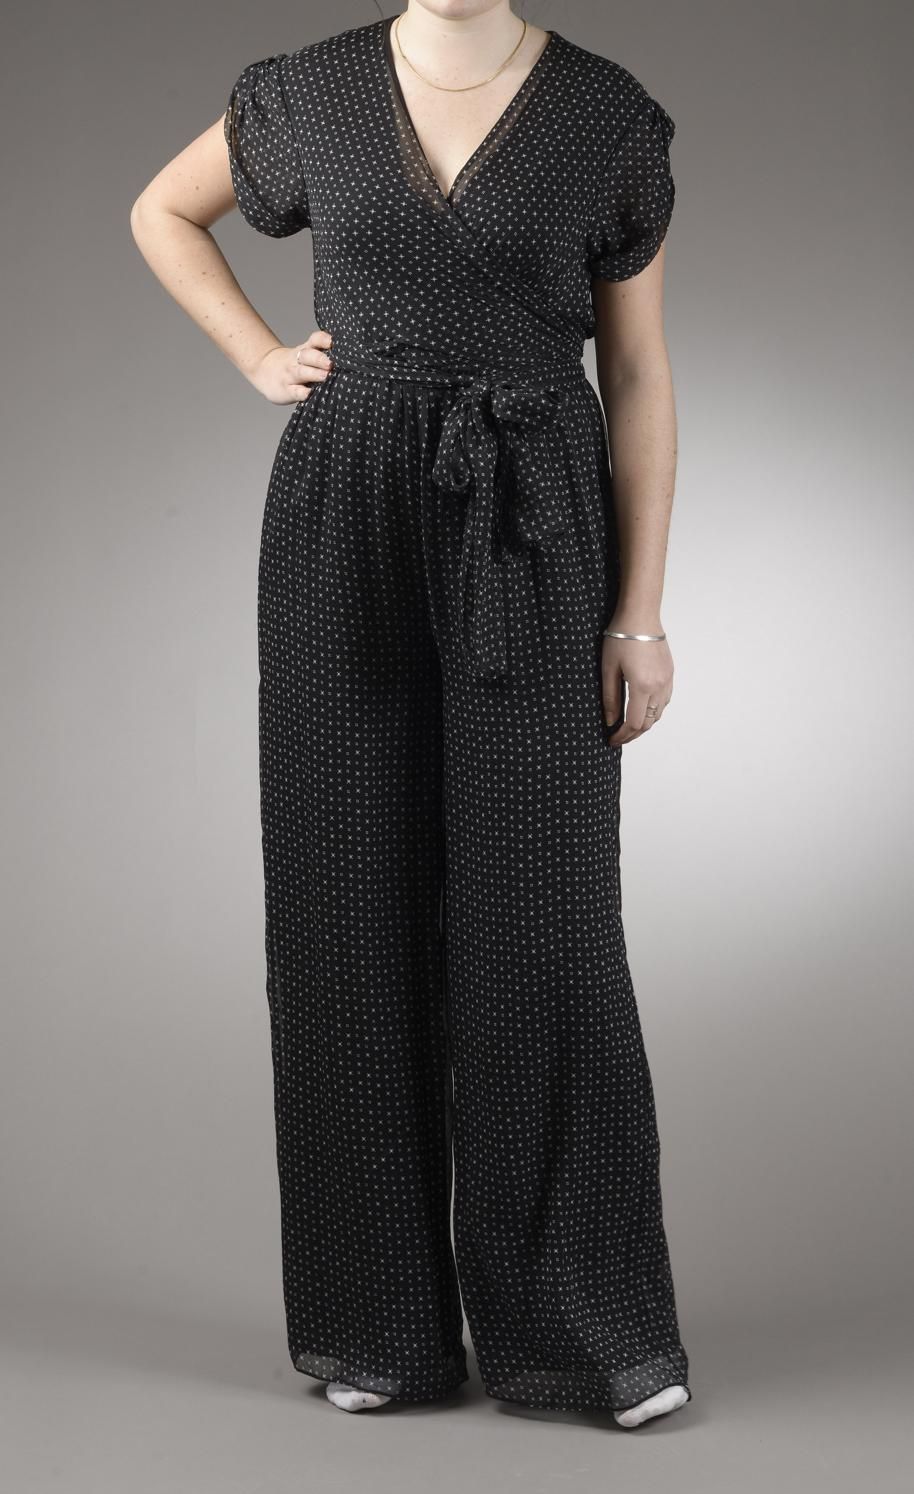 Null *尺寸L DVF - Diane Von Fürstenberg

套装包括。

丝质雪纺连体裤，型号为 "DVF Cassandra"，黑色背景上印&hellip;